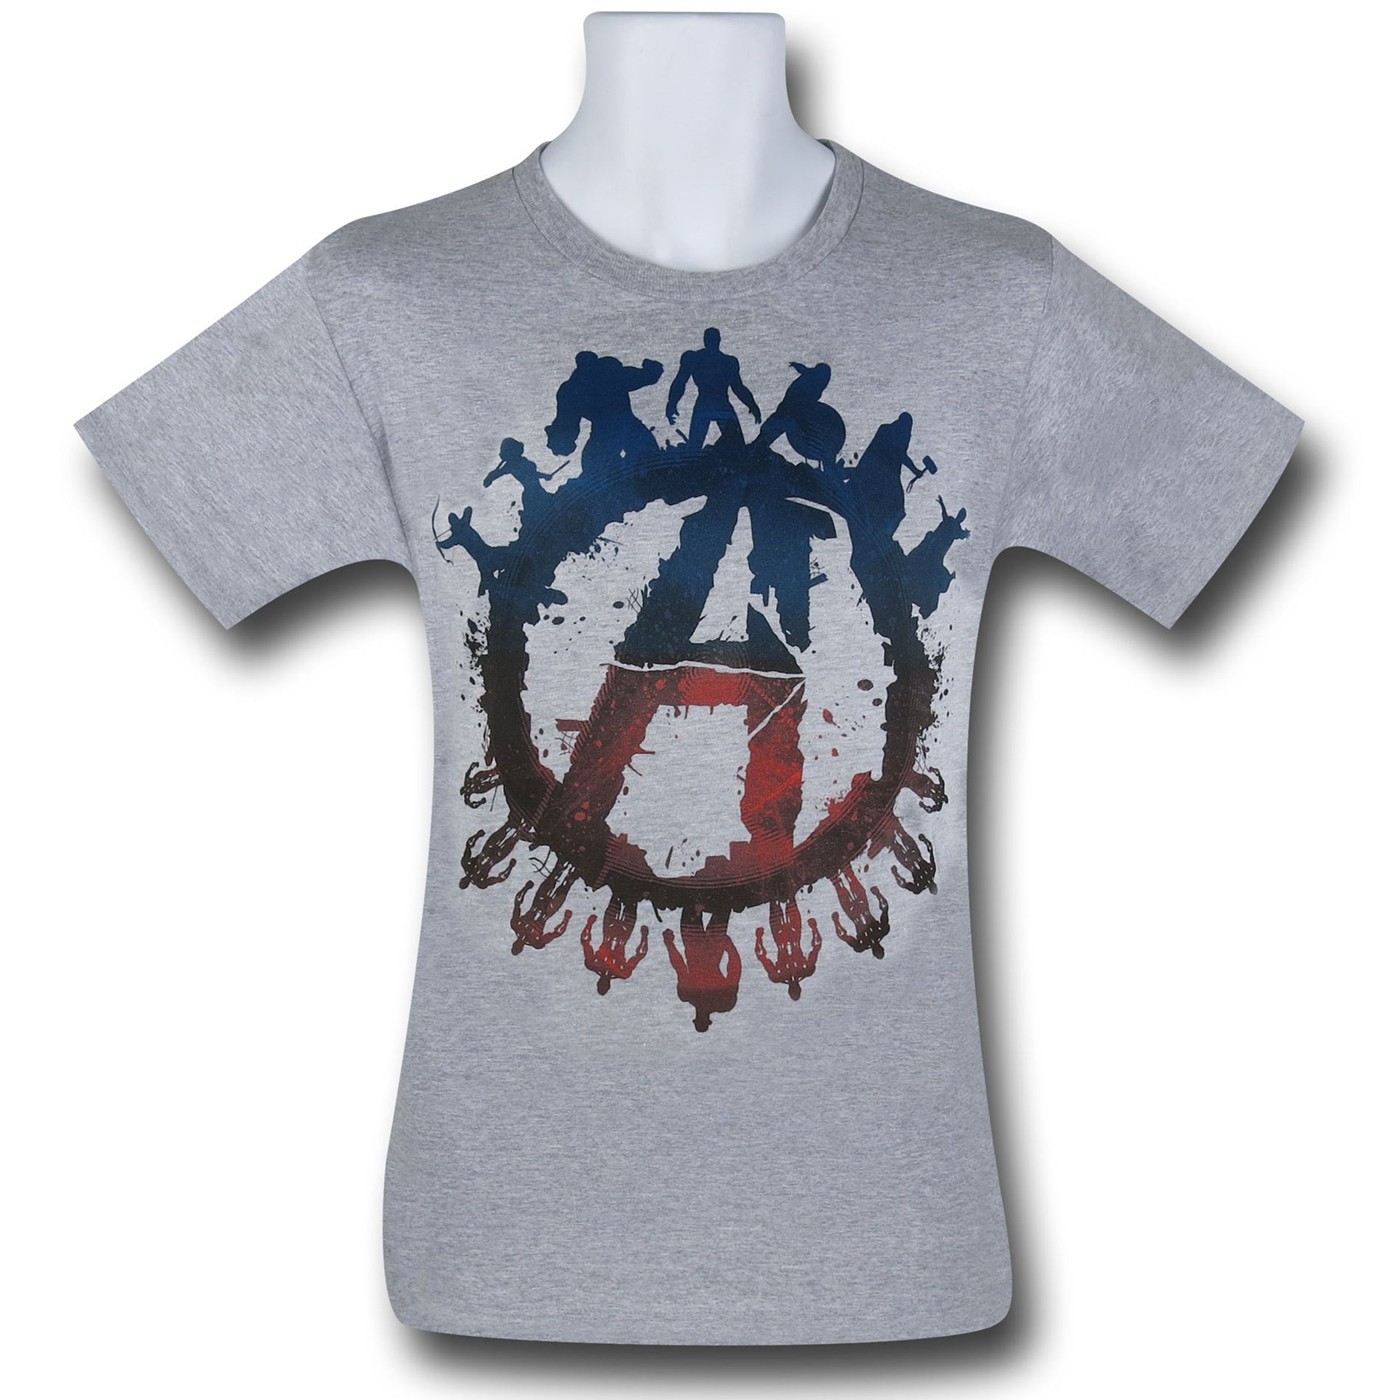 Avengers Good Over Evil T-Shirt